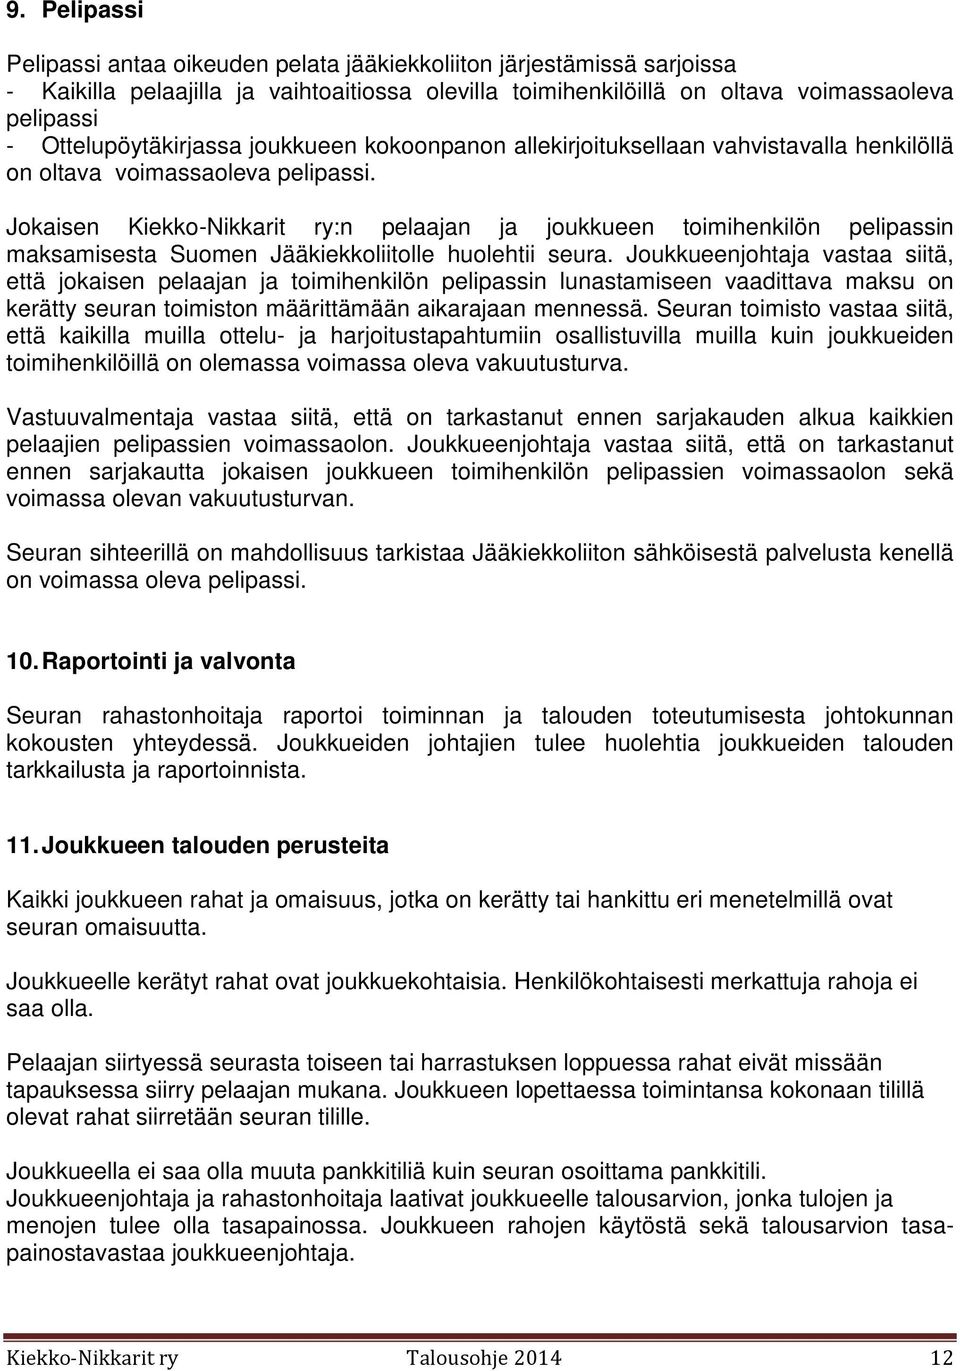 Jokaisen Kiekko-Nikkarit ry:n pelaajan ja joukkueen toimihenkilön pelipassin maksamisesta Suomen Jääkiekkoliitolle huolehtii seura.